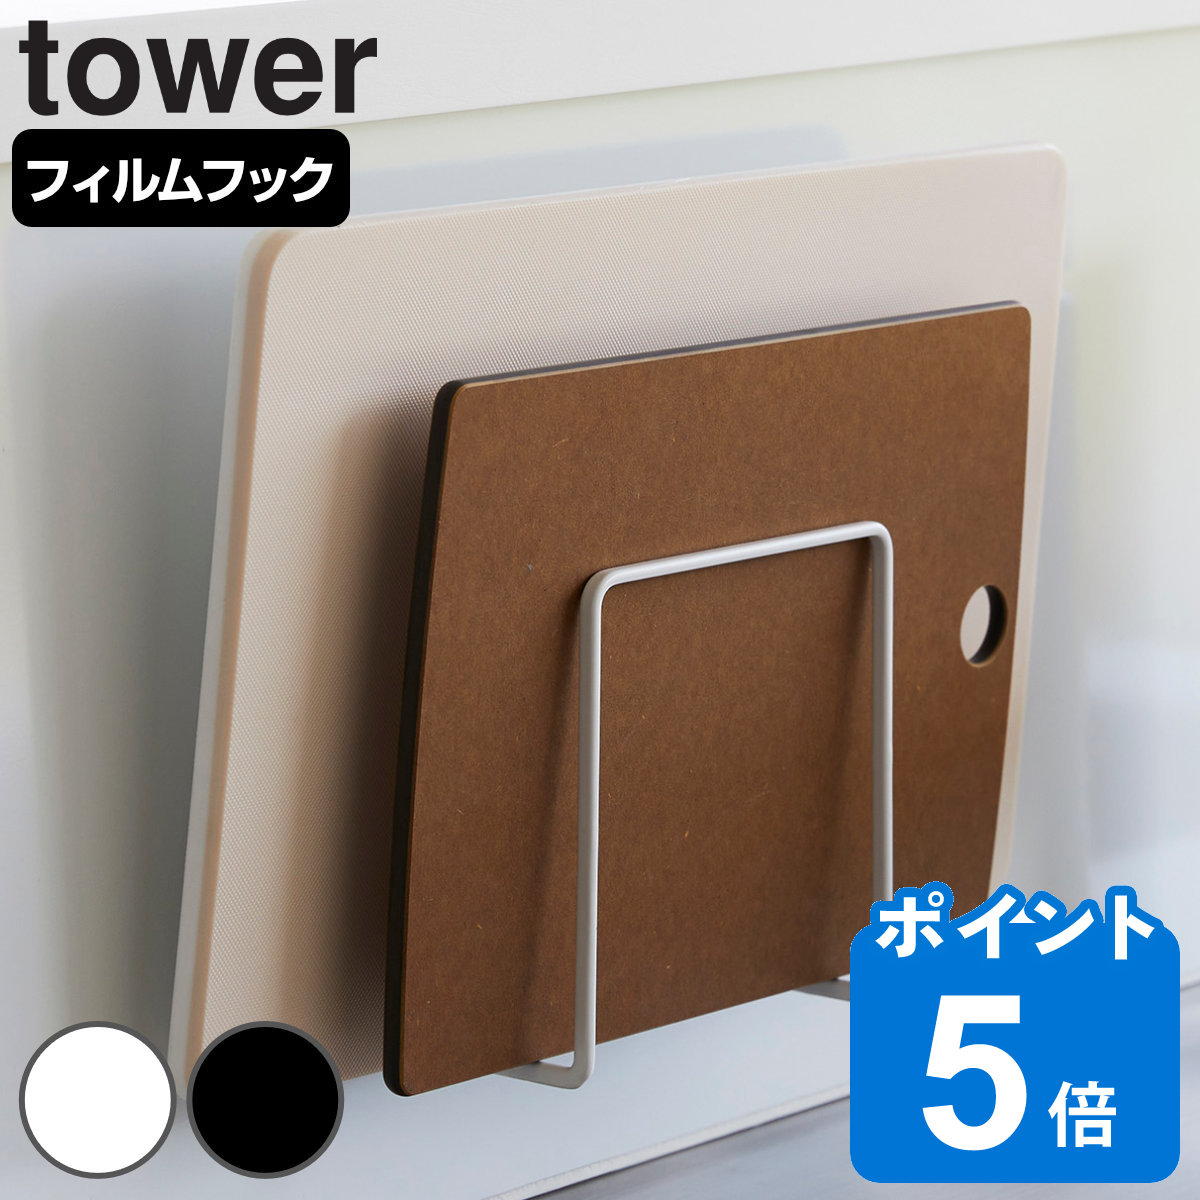 山崎実業 tower フィルムフックまな板ホルダー タワー